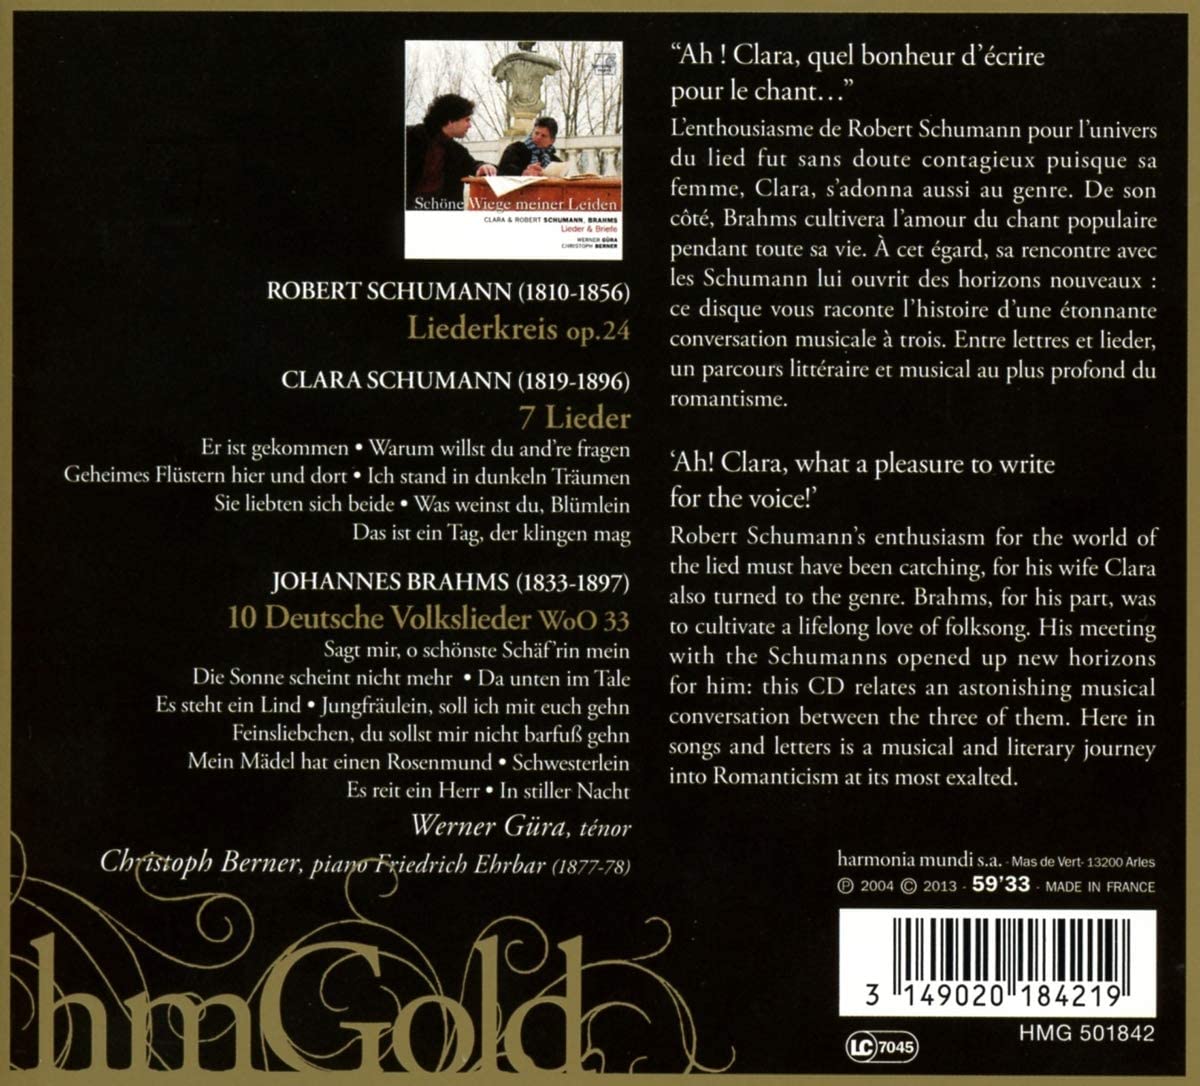 Schöne Wiege meiner Leiden - Lieder & Briefe: Brahms, Clara & Robert Schumann - slide-1